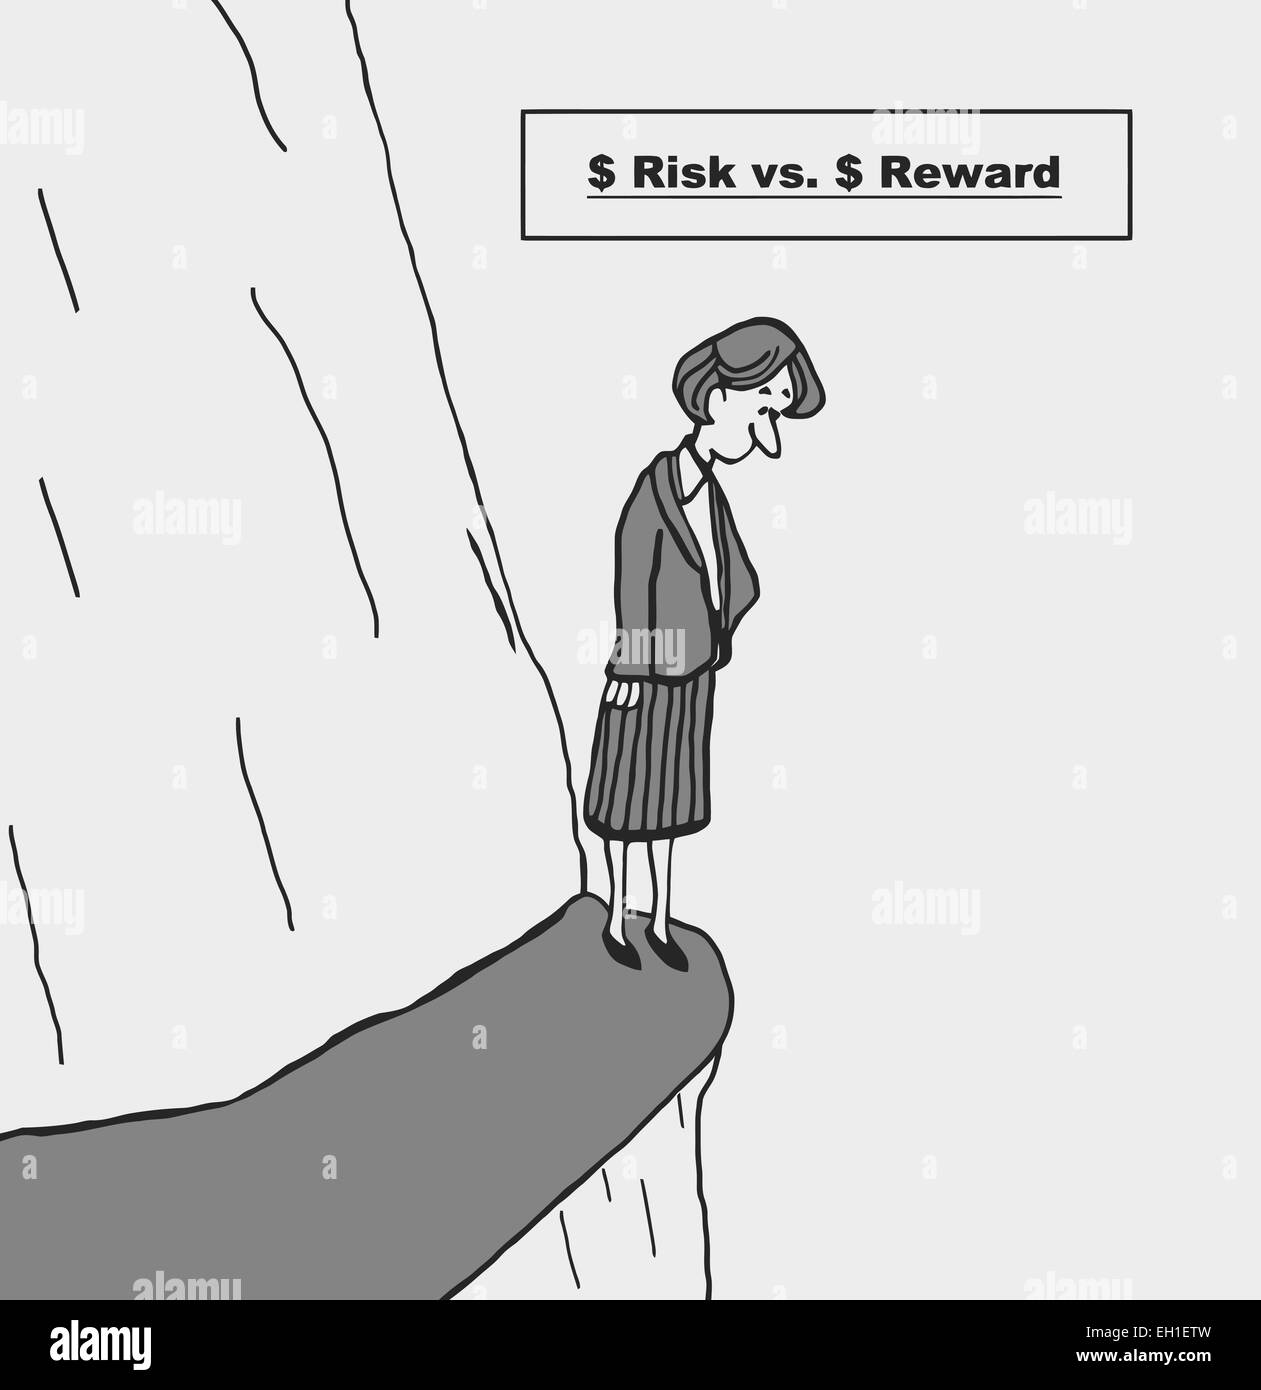 Caricature de businesswoman chef debout sur la falaise et pense à ses options : $ $ risque contre récompense. Illustration de Vecteur